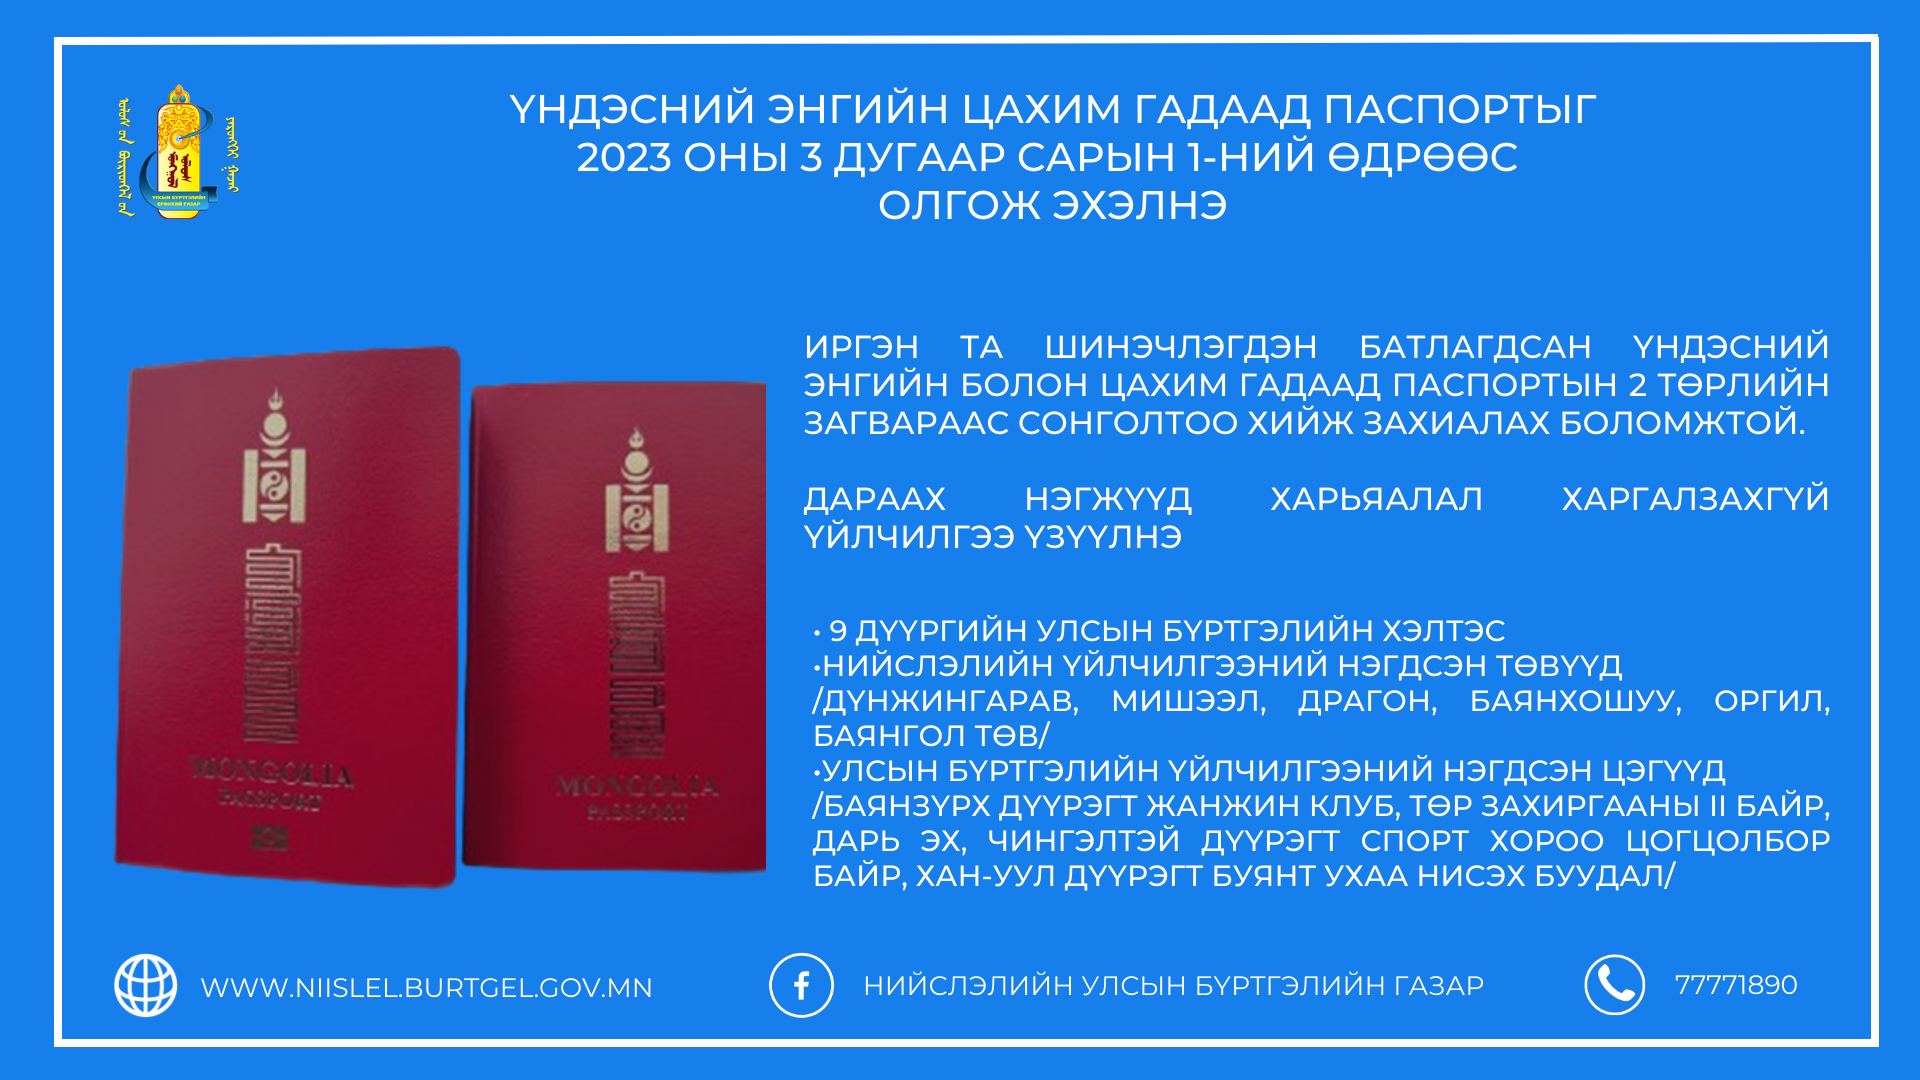 Үндэсний энгийн цахим гадаад паспорт /е-паспорт/-ыг 2023 оны 3 дугаар сарын 1-ний өдрөөс олгож эхэлнэ